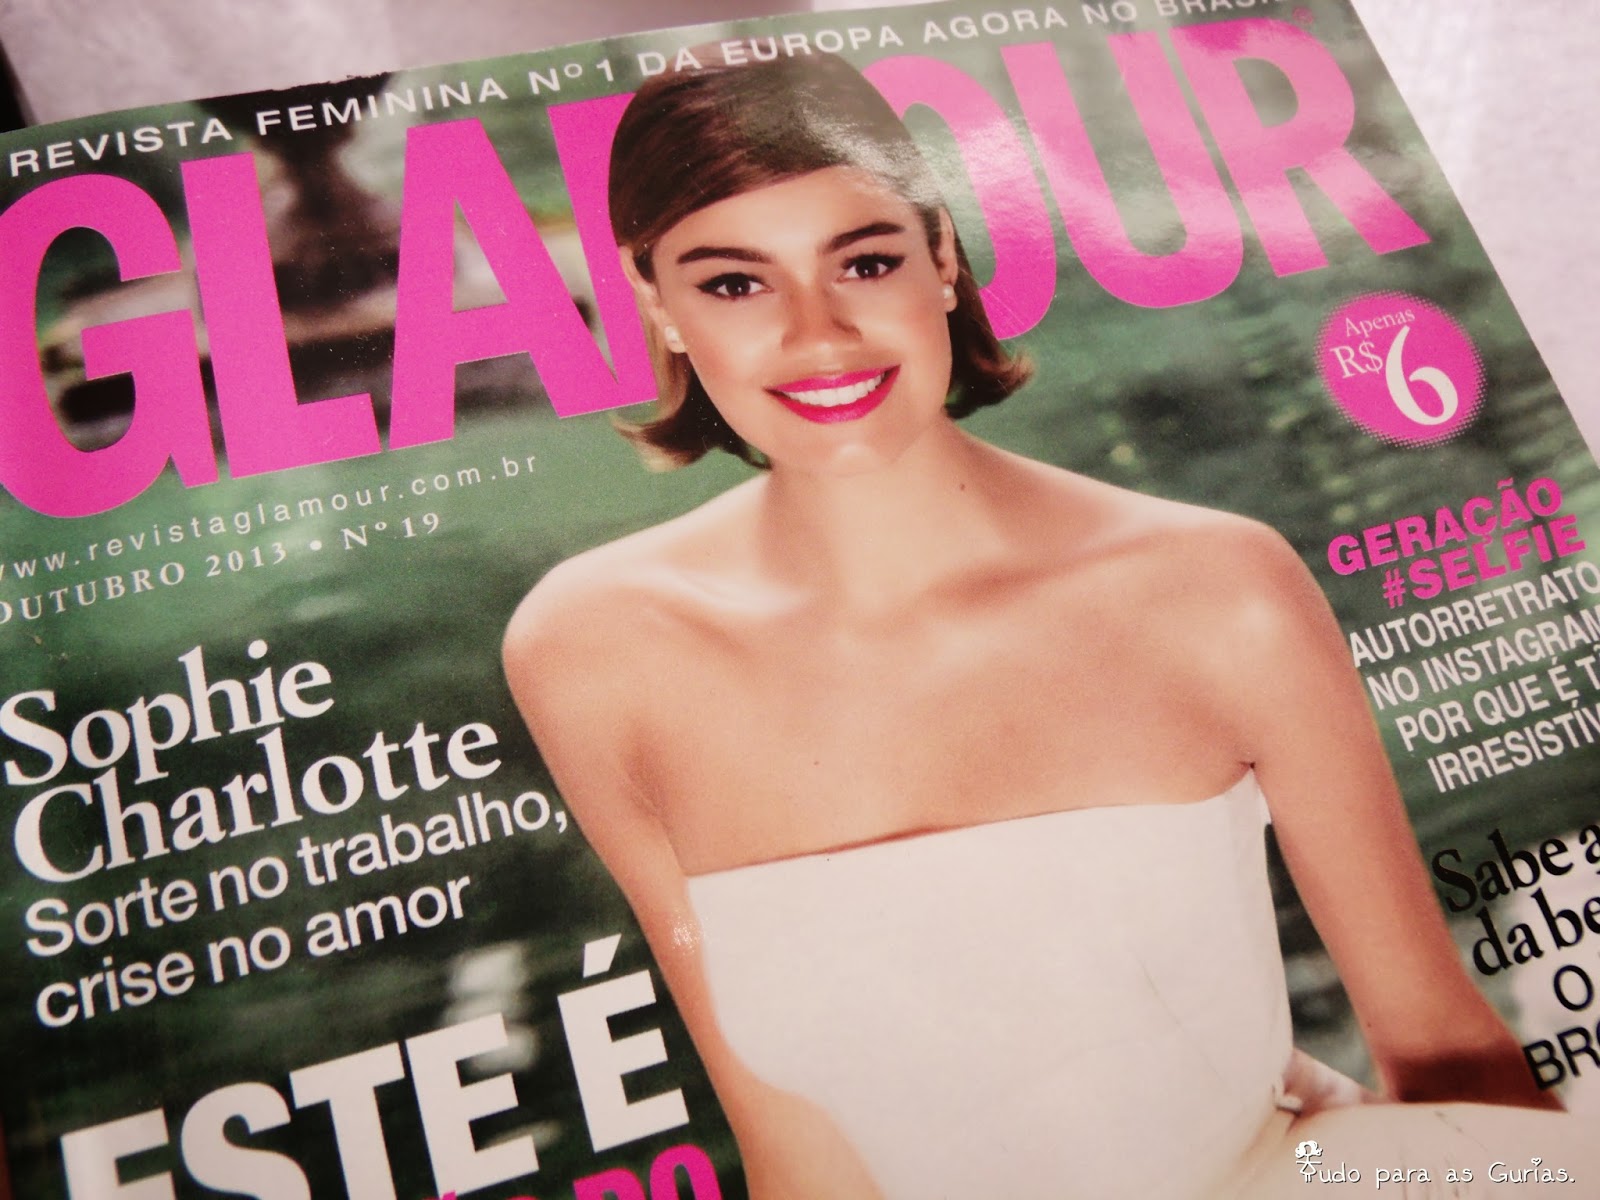 Revista Glamour de Outubro 2013.